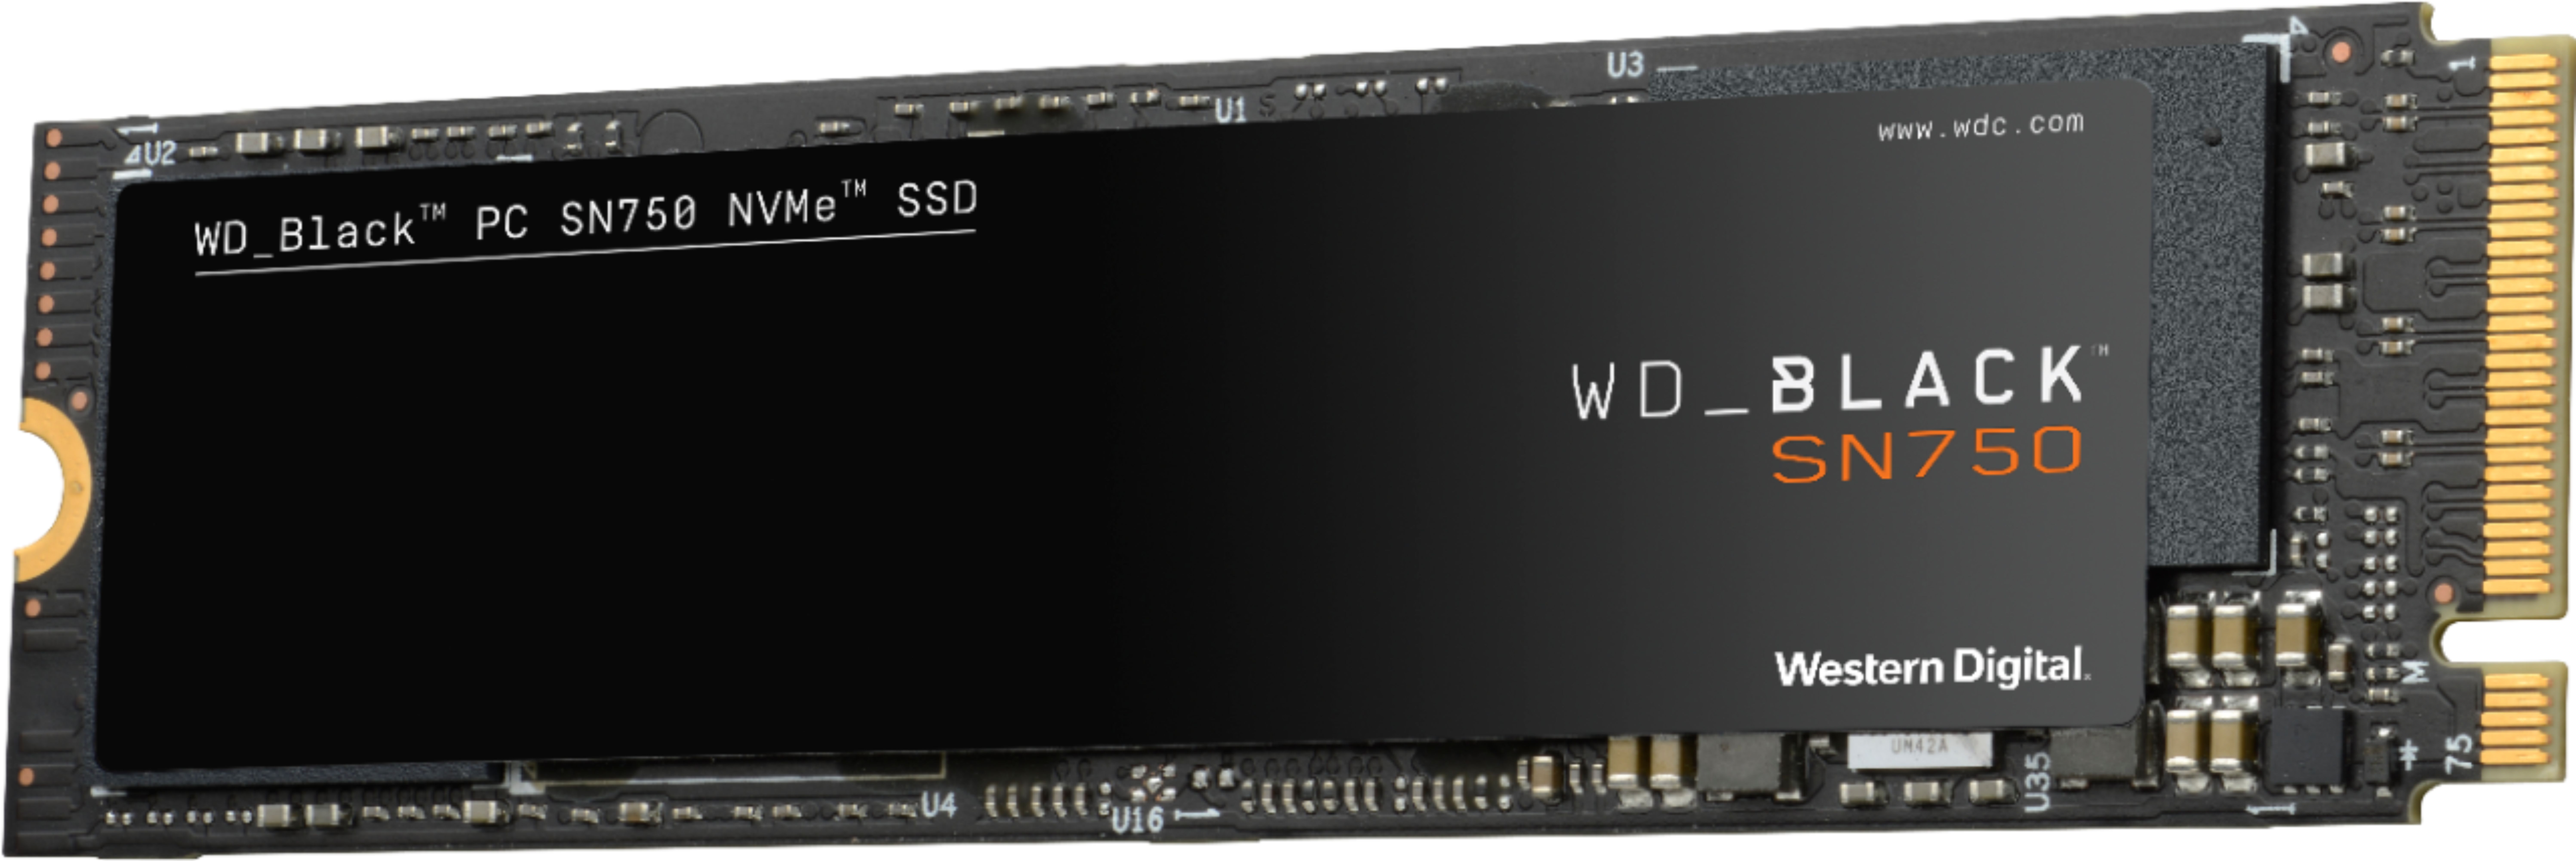 Best Buy: WD BLACK SN750 500GB Gaming SSD PCIe Gen 3 x4 NVMe